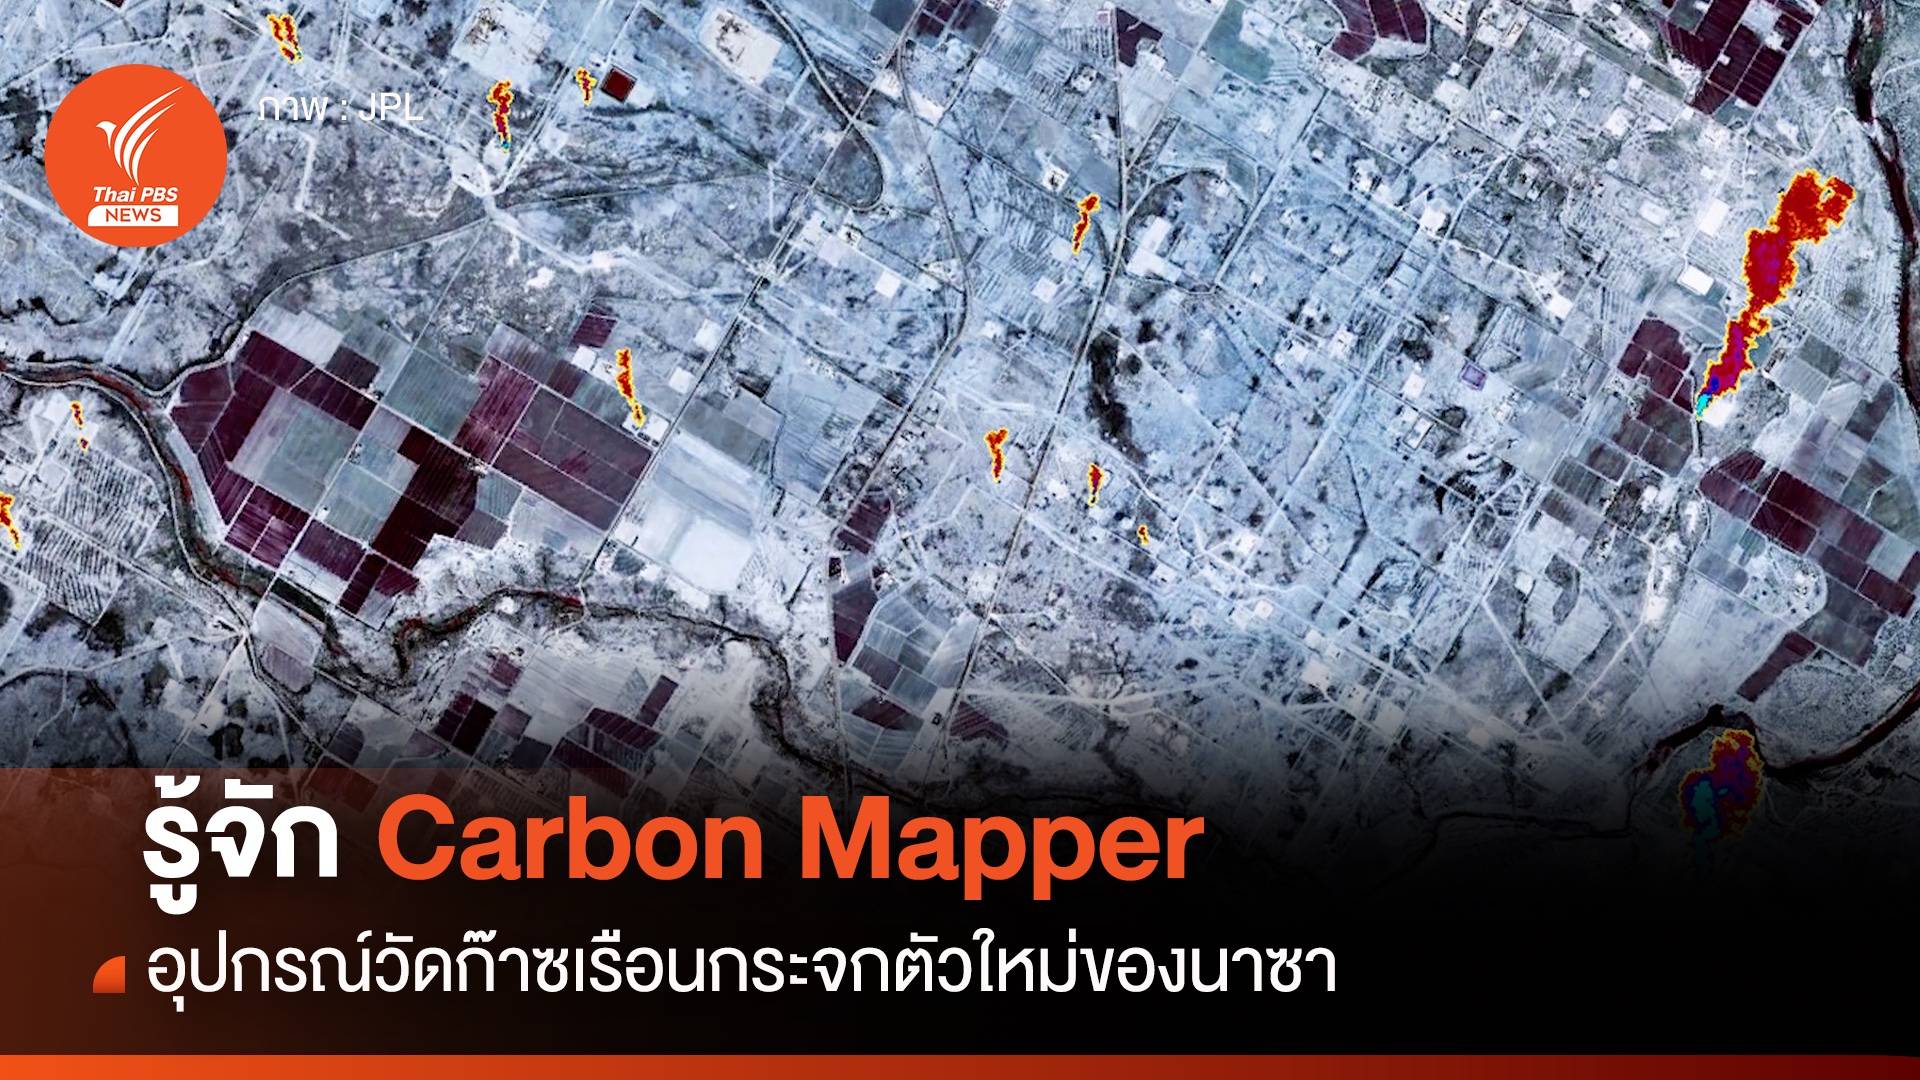 รู้จัก Carbon Mapper อุปกรณ์วัดก๊าซเรือนกระจกตัวใหม่ของนาซา